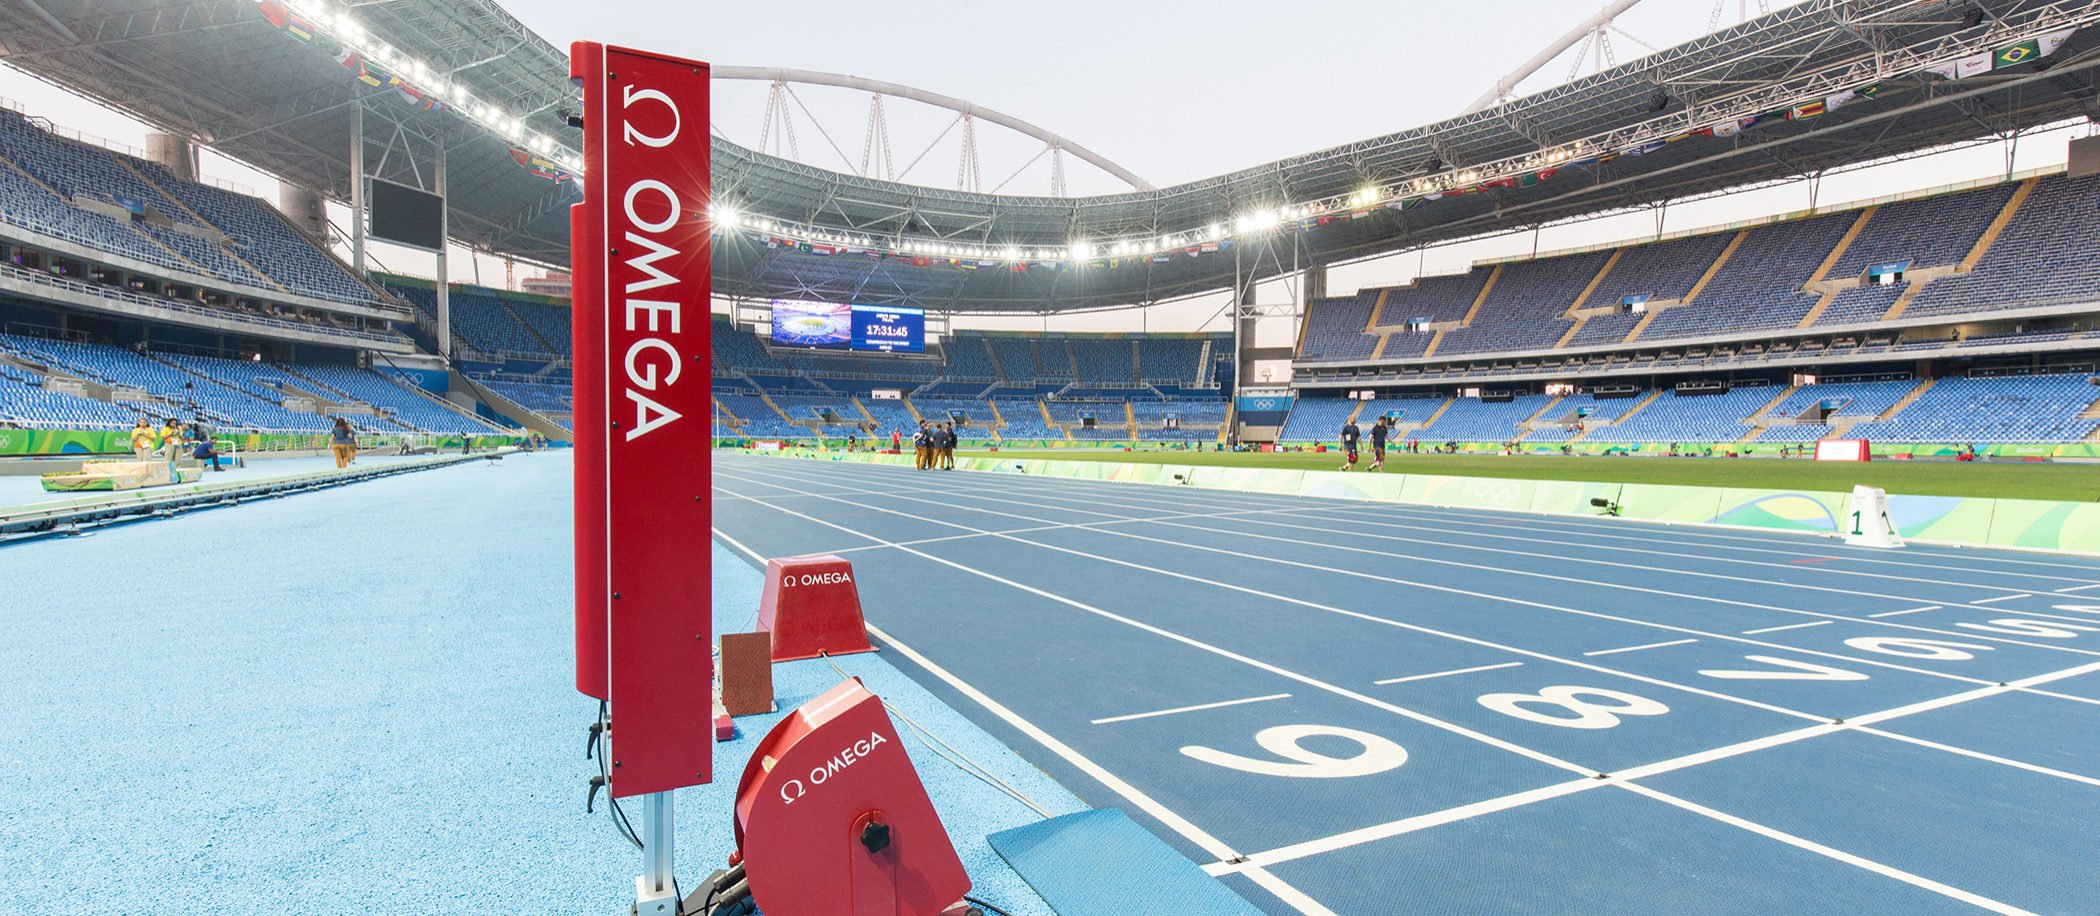 Omega i pomiar czasu na igrzyskach olimpijskich